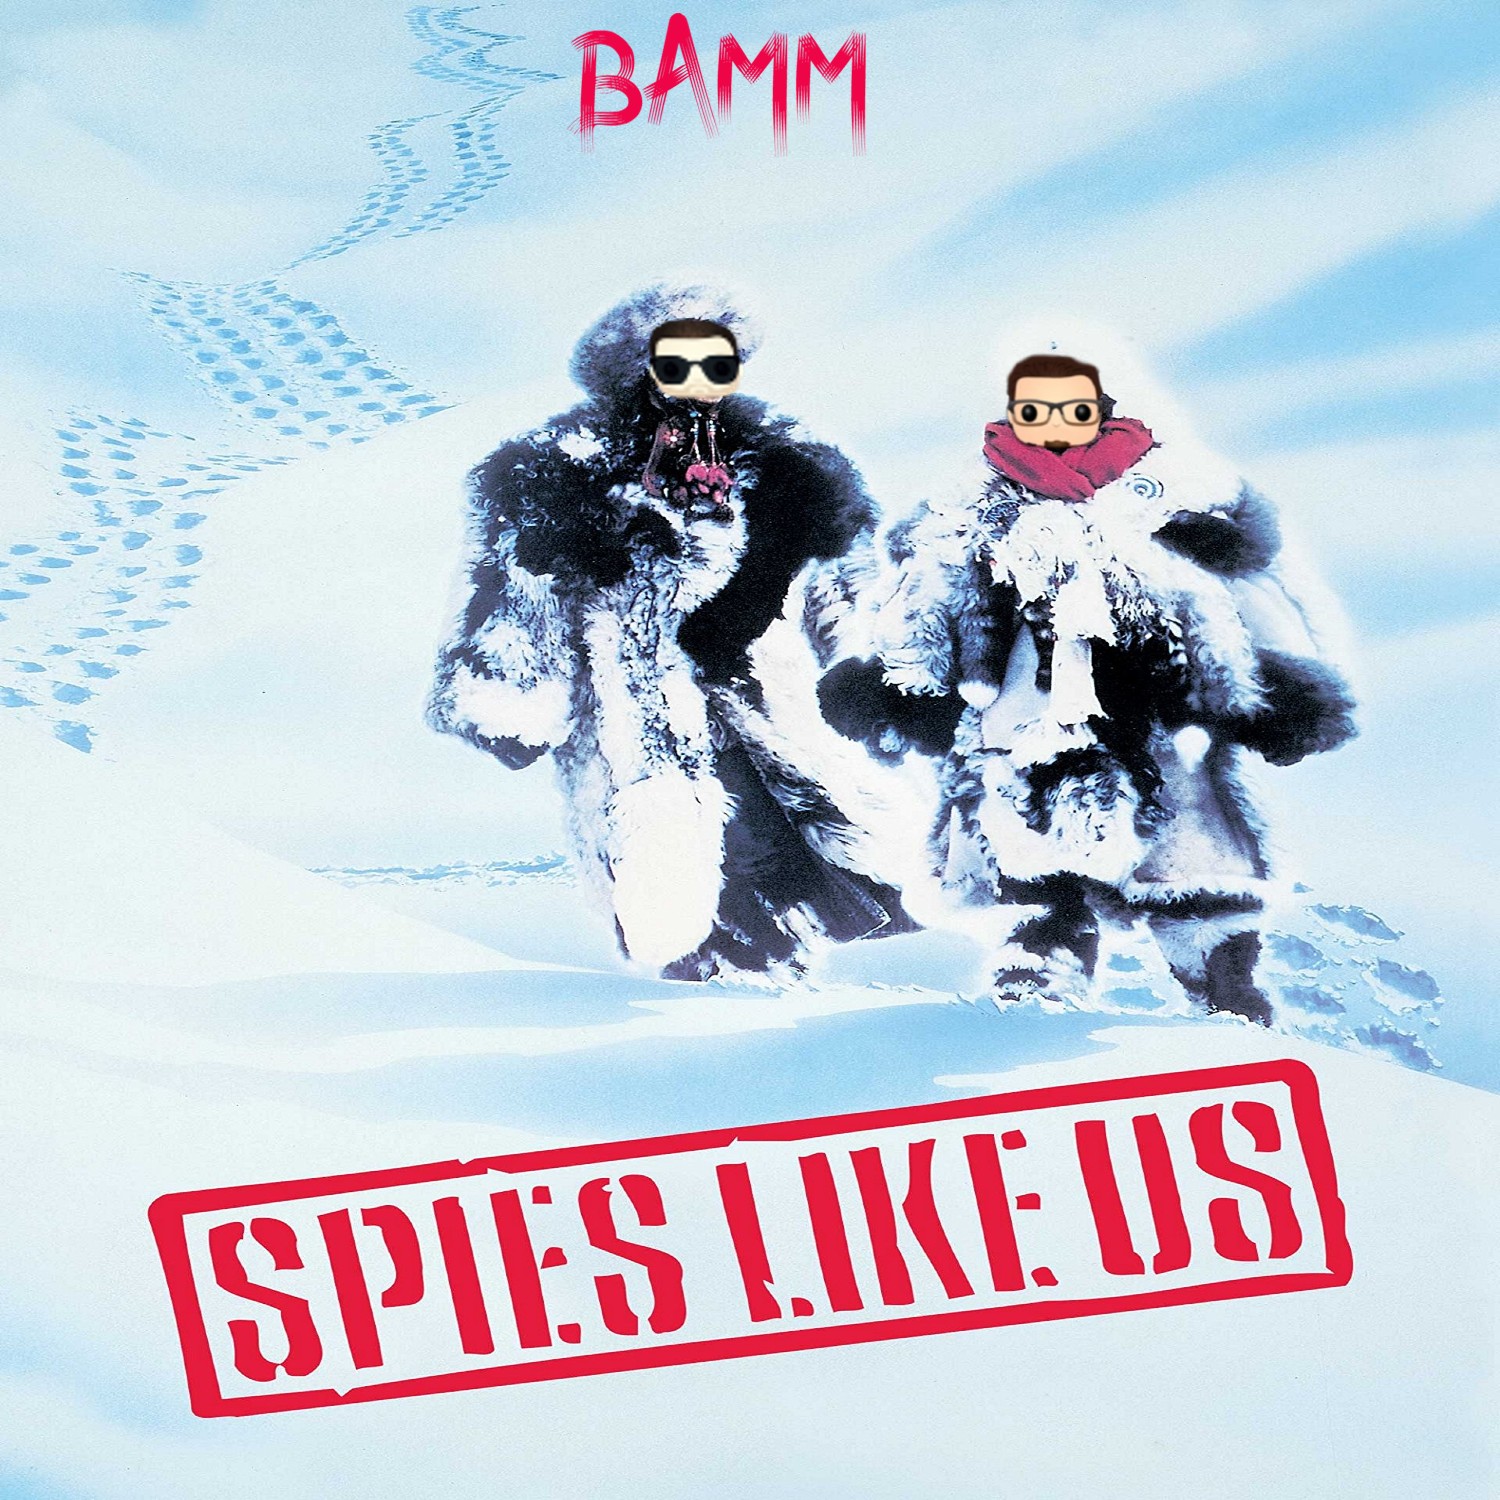 Spies Like Us